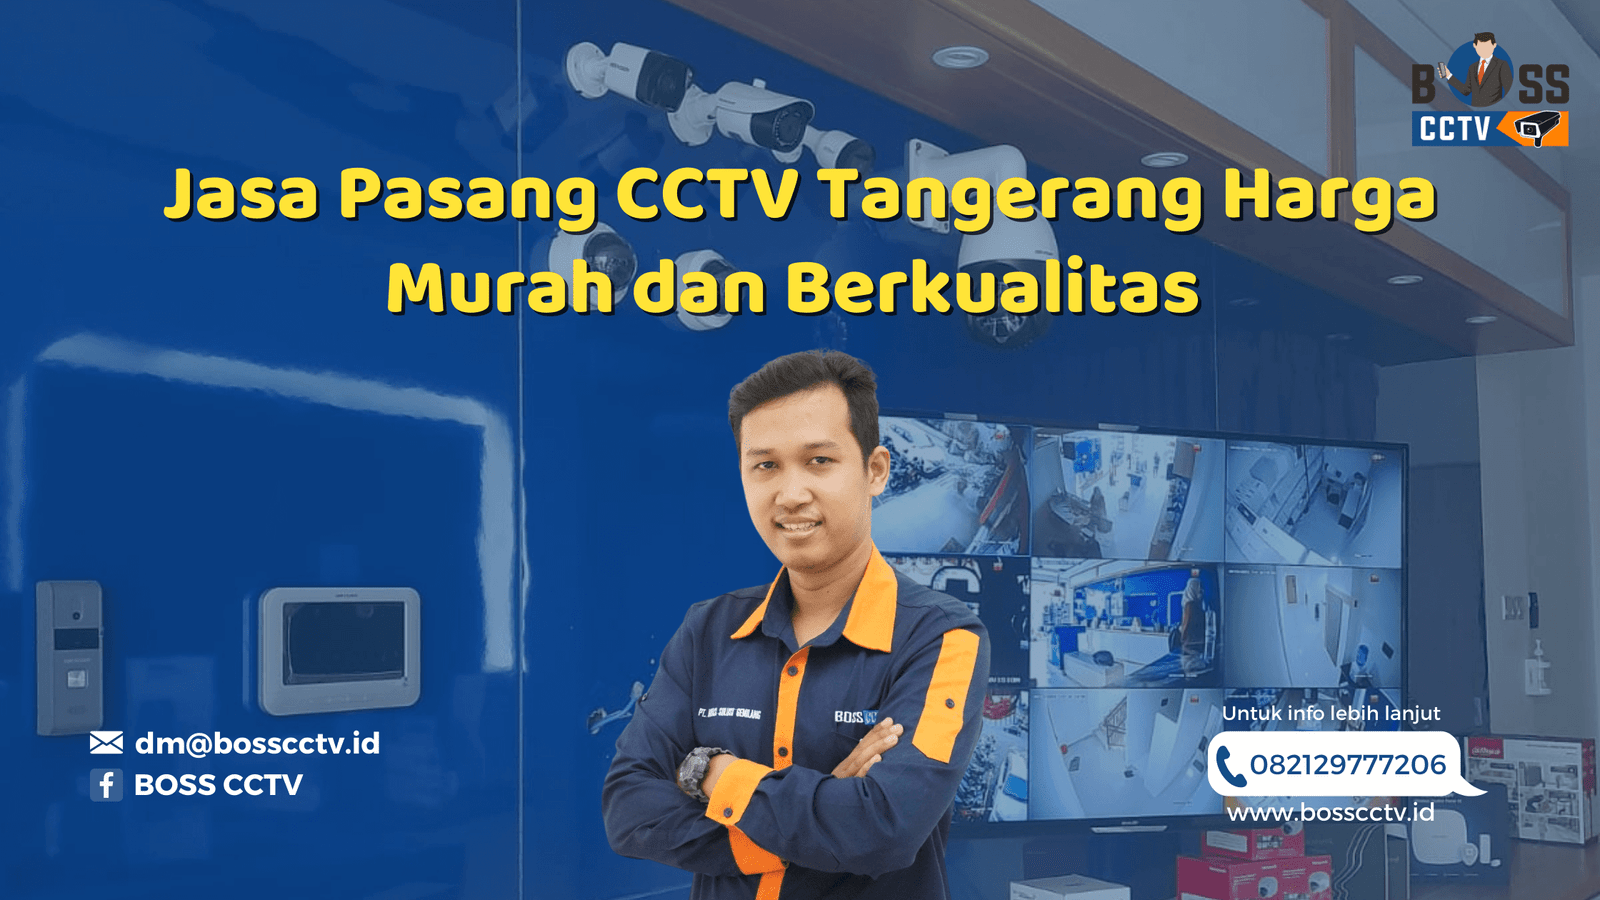 Pasang CCTV Tangerang Harga Murah dan Berkualitas